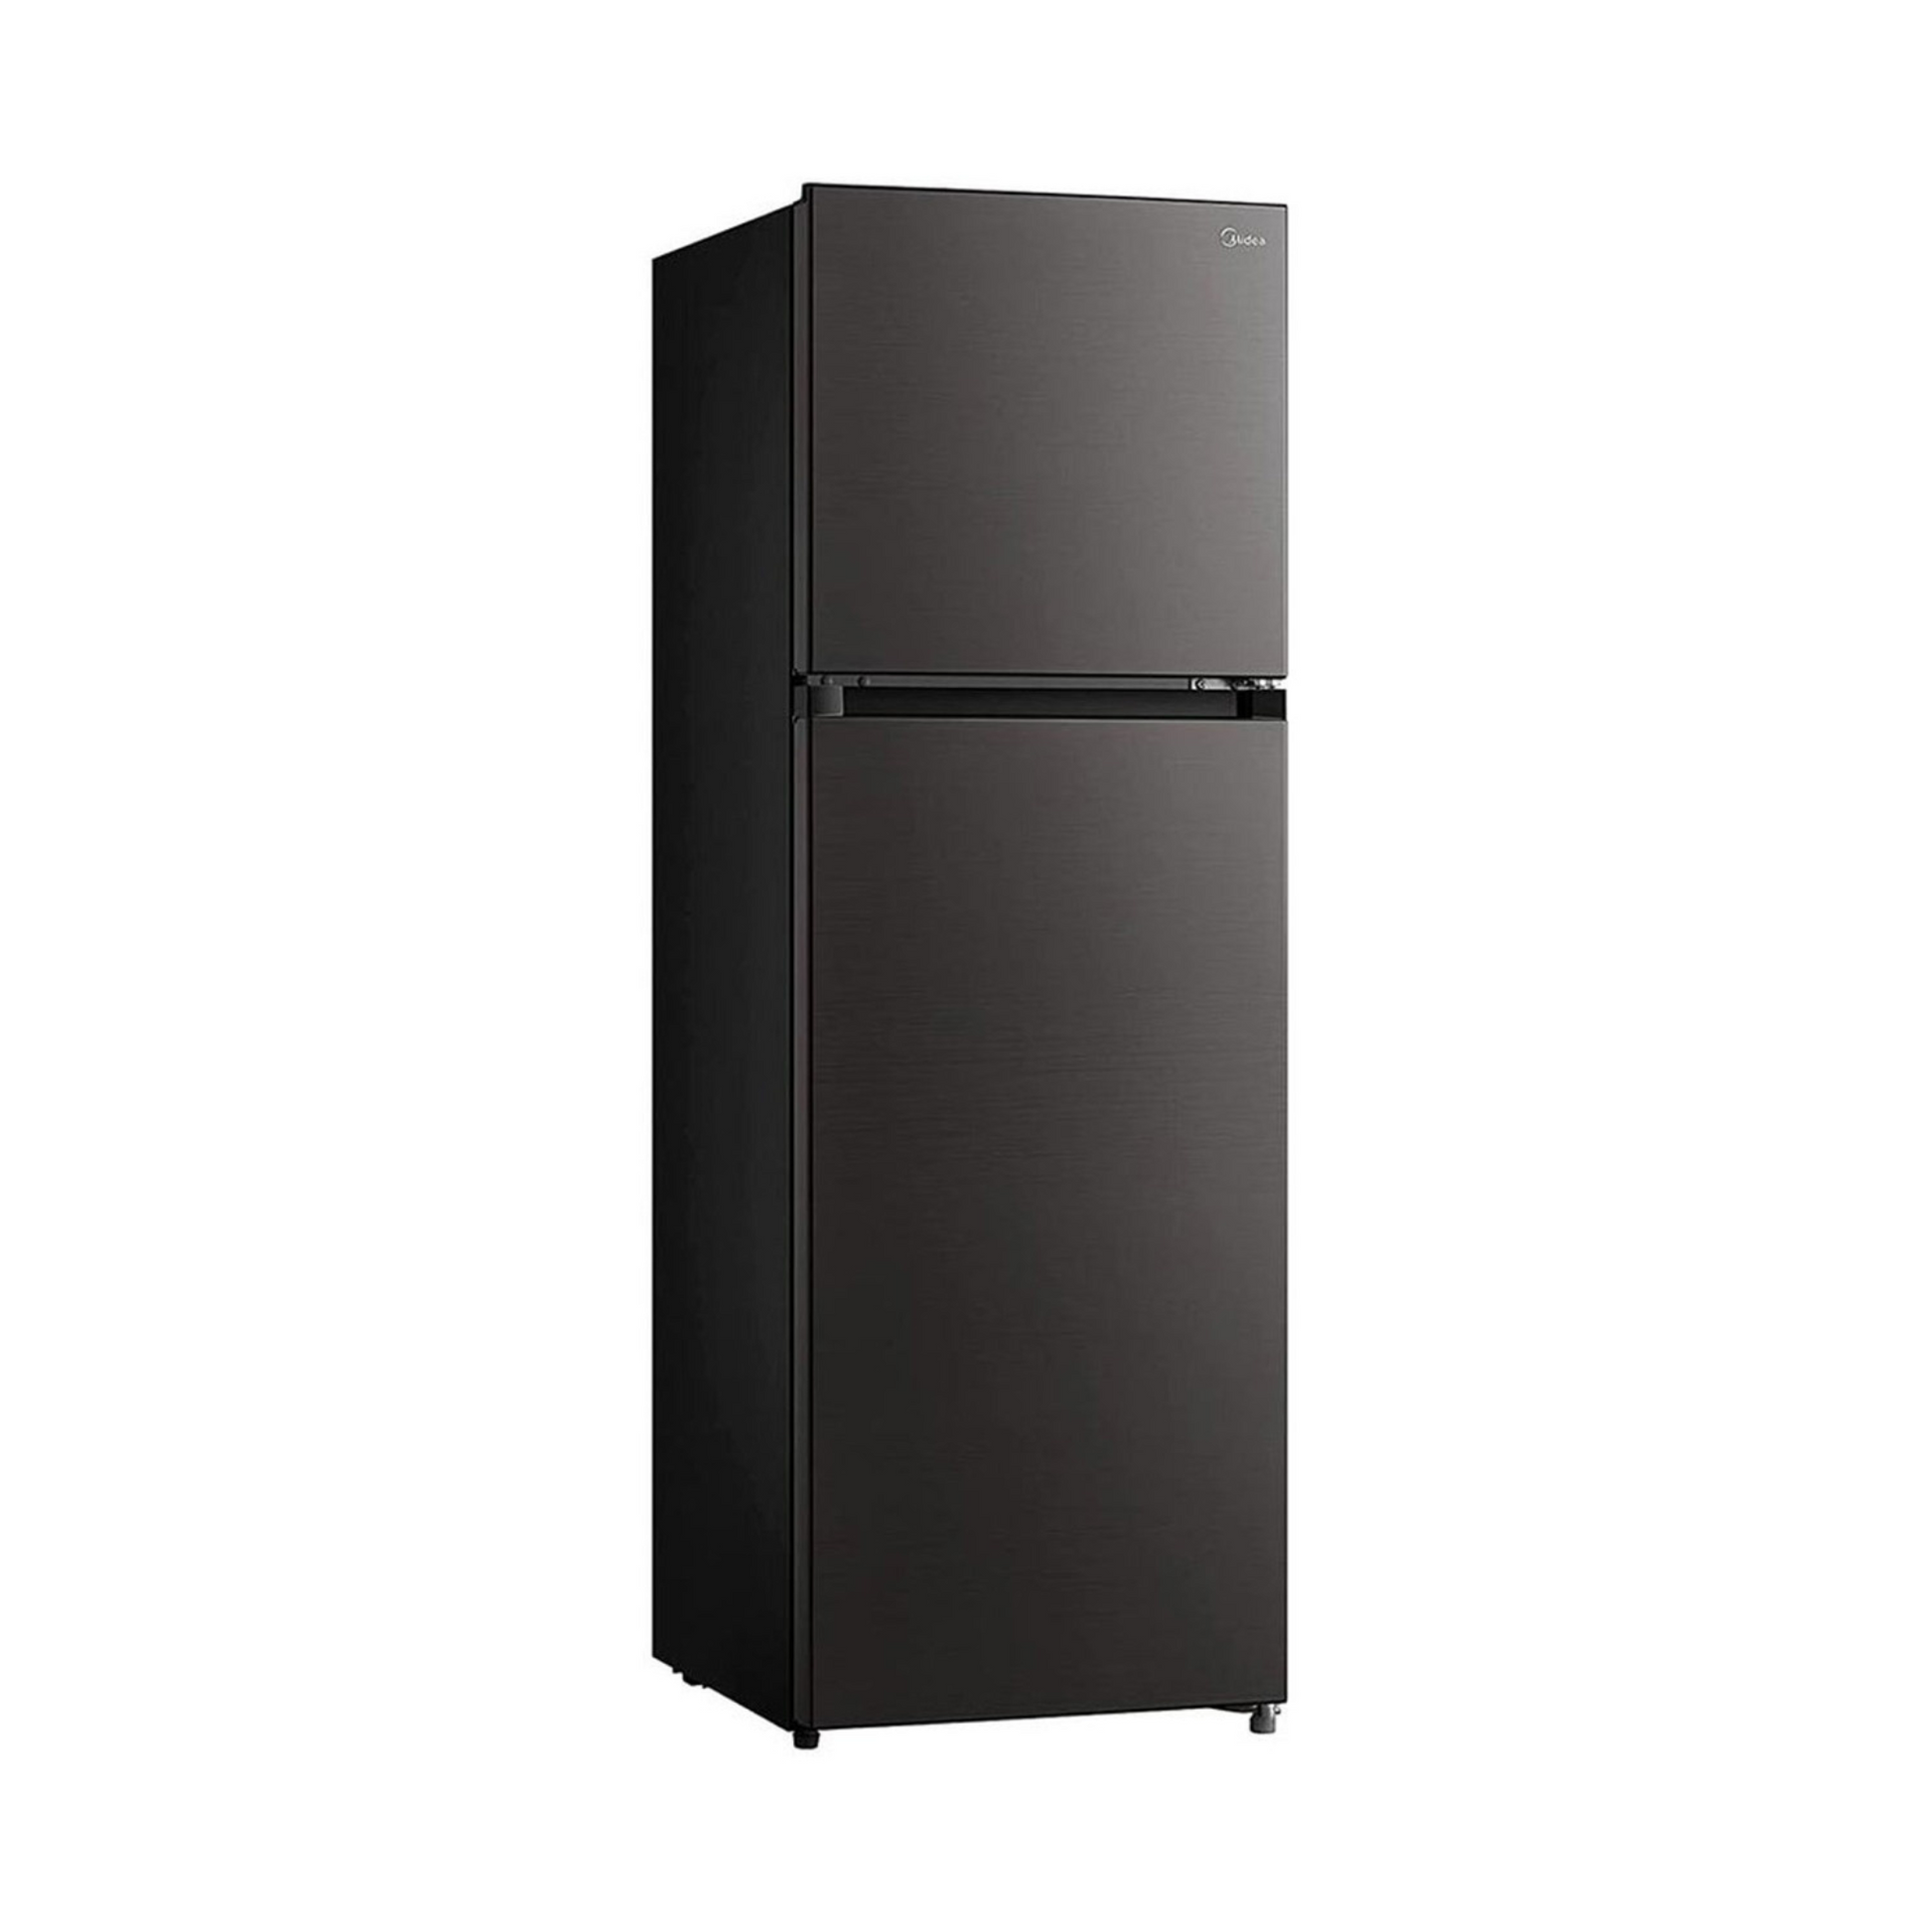 Midea 390L Double Door Refrigerator, MDRT390MTE28